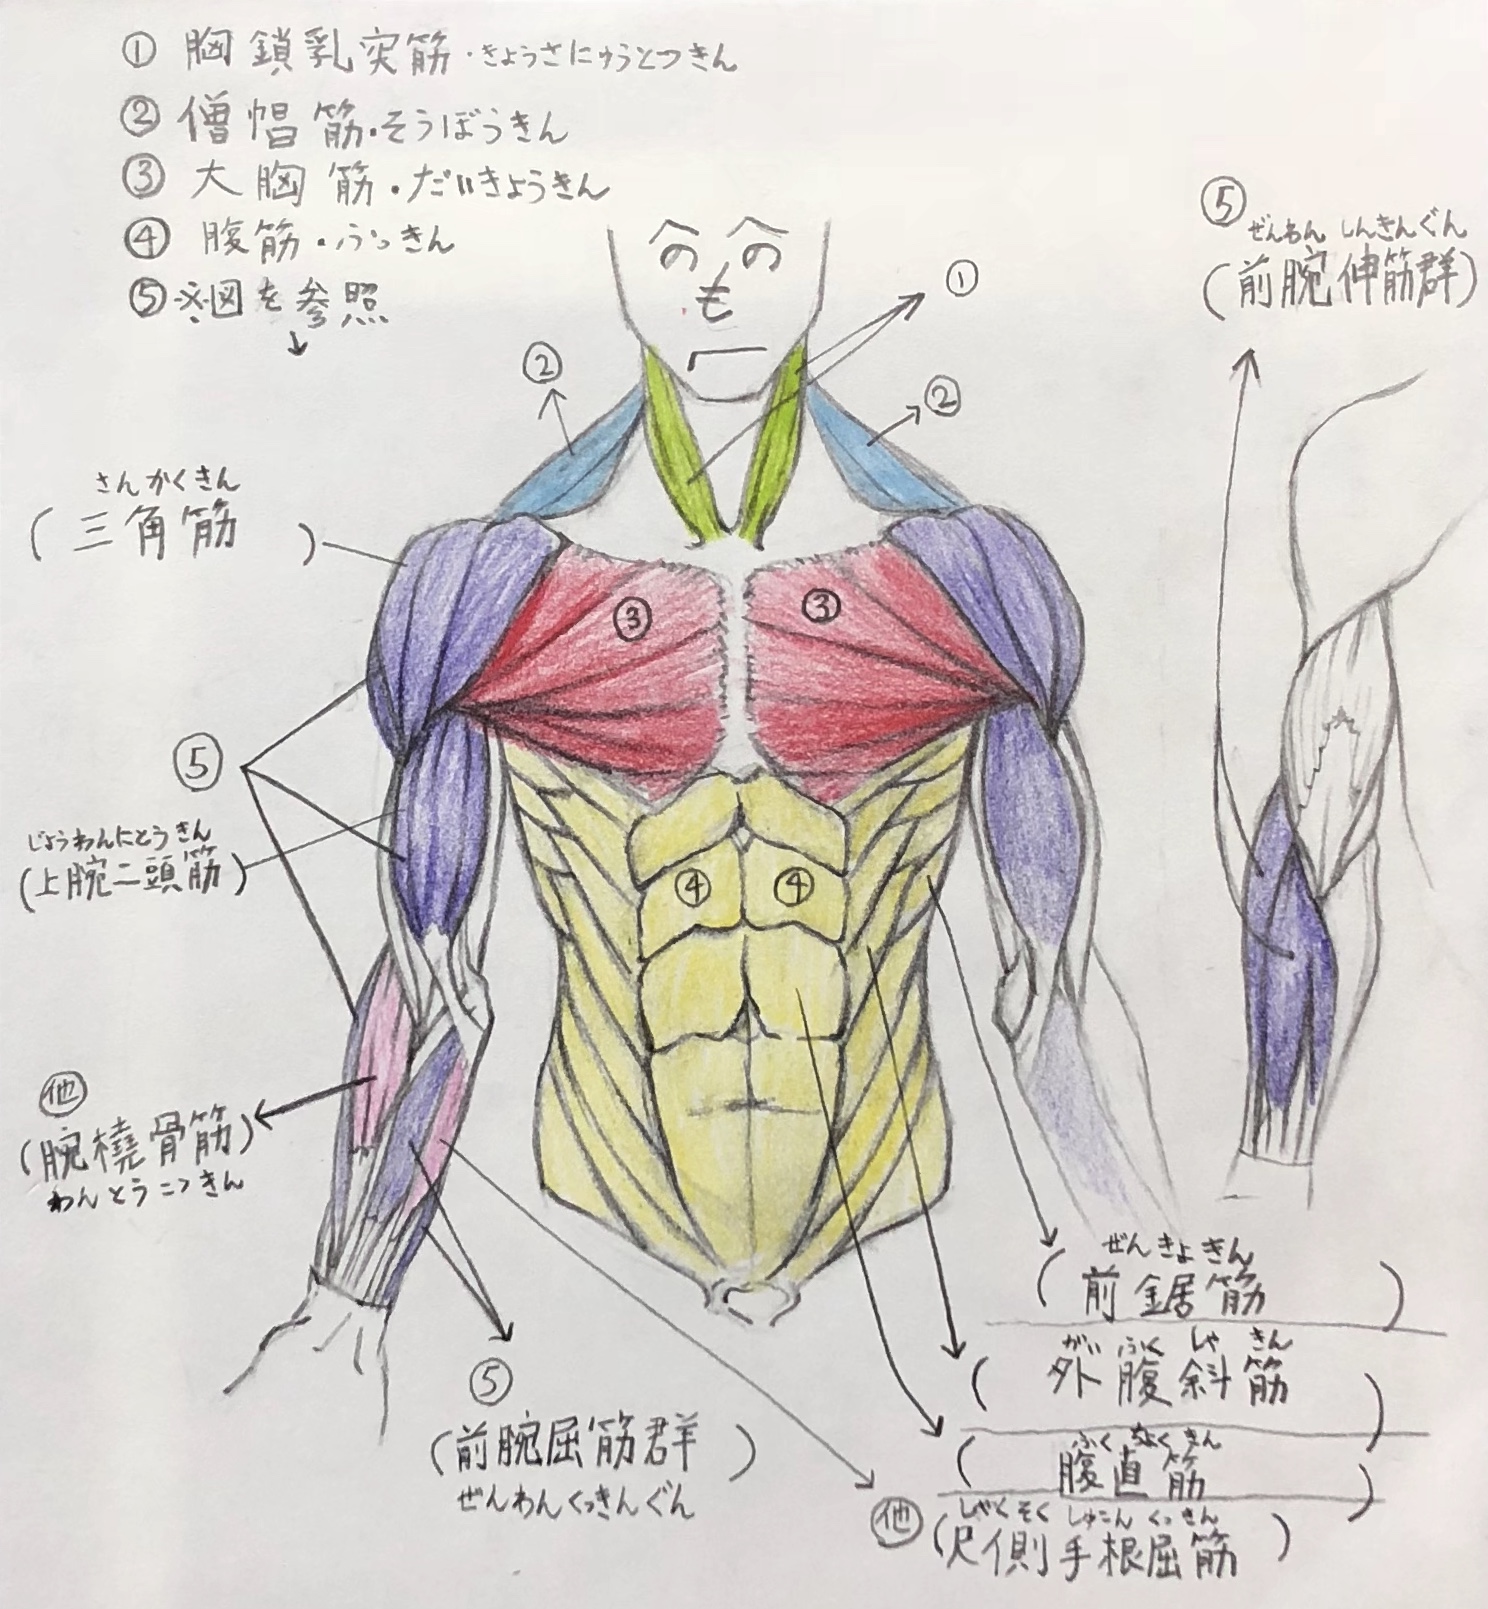 画家が解説 上半身の筋肉の描き方 ここを抑えれば大丈夫 前身編 絵描きと絵画表現 Houichi美術絵描き研究所